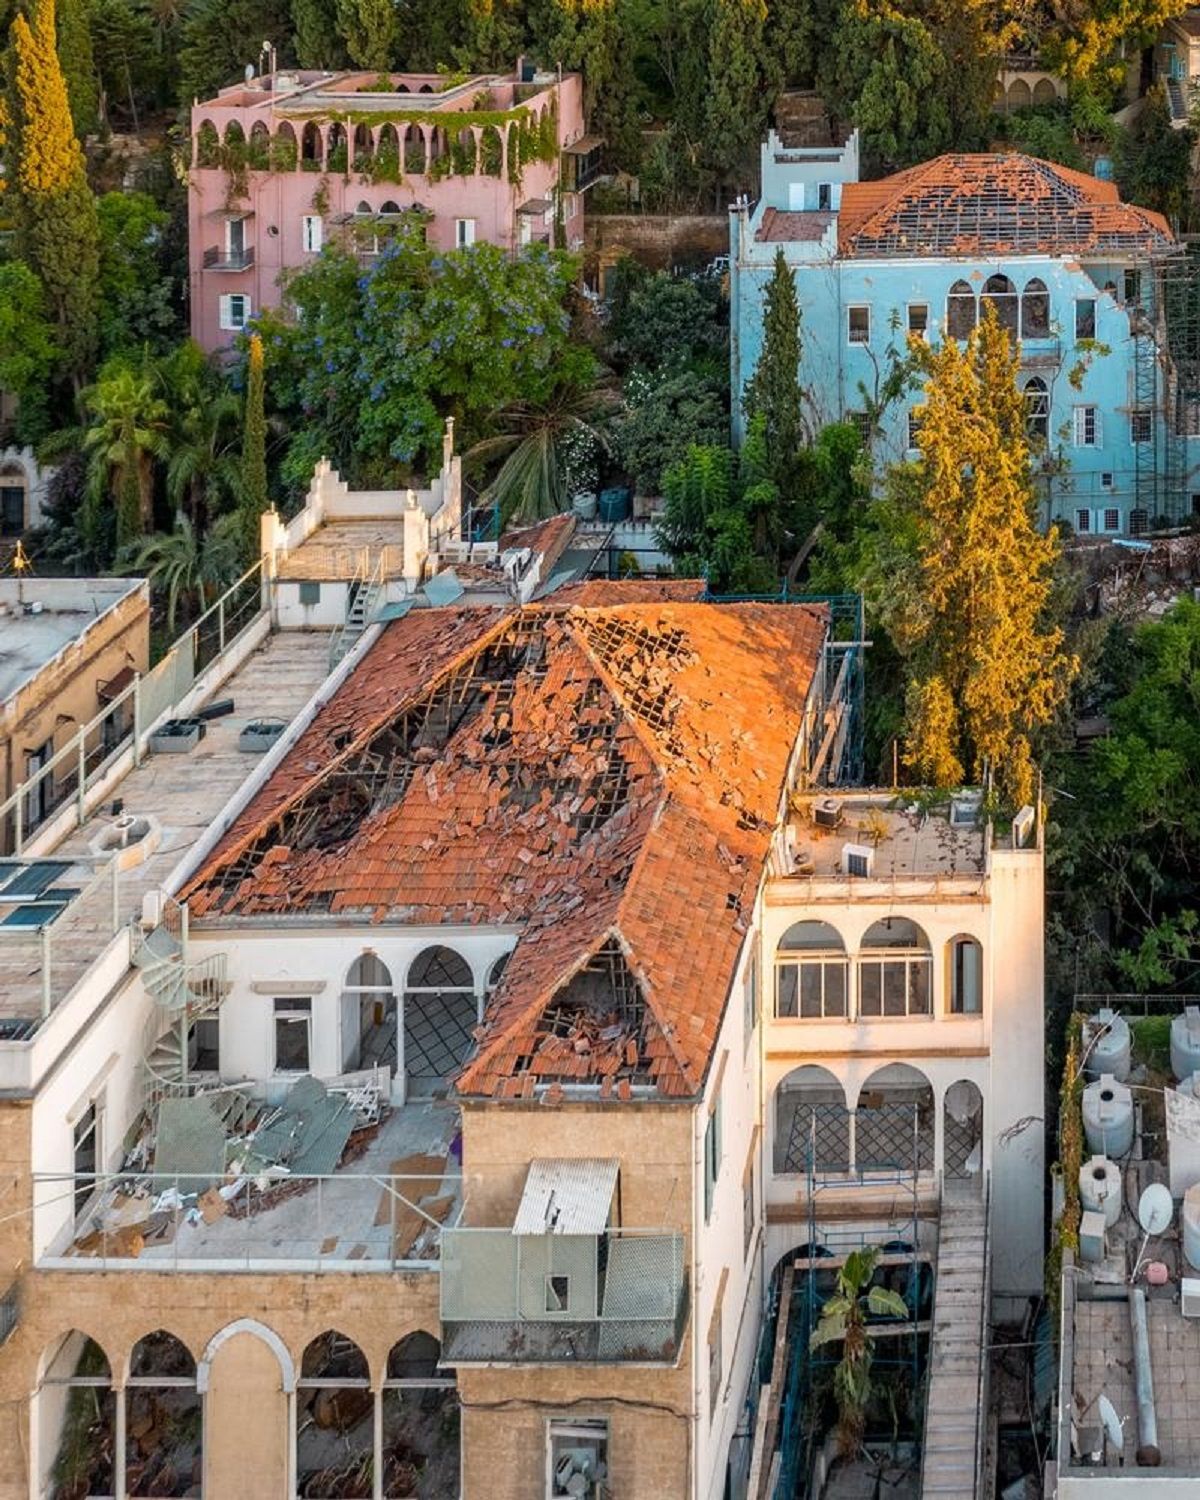 Beirut: Một nền di sản kiến trúc bị đe dọa và một ký ức cộng đồng đau thương